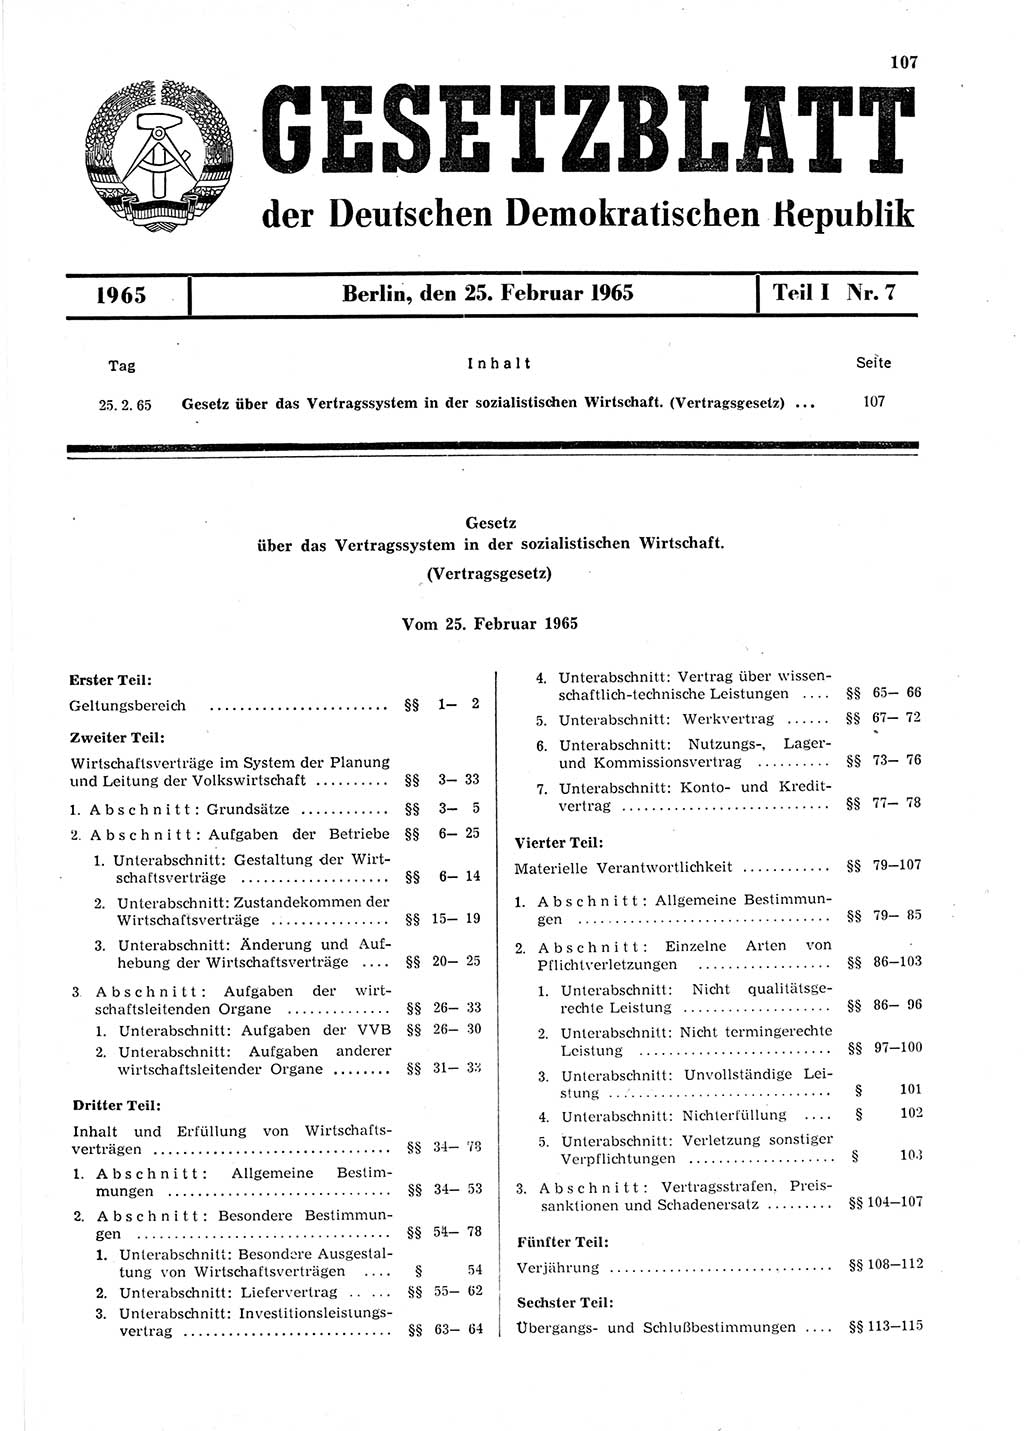 Gesetzblatt (GBl.) der Deutschen Demokratischen Republik (DDR) Teil Ⅰ 1965, Seite 107 (GBl. DDR Ⅰ 1965, S. 107)